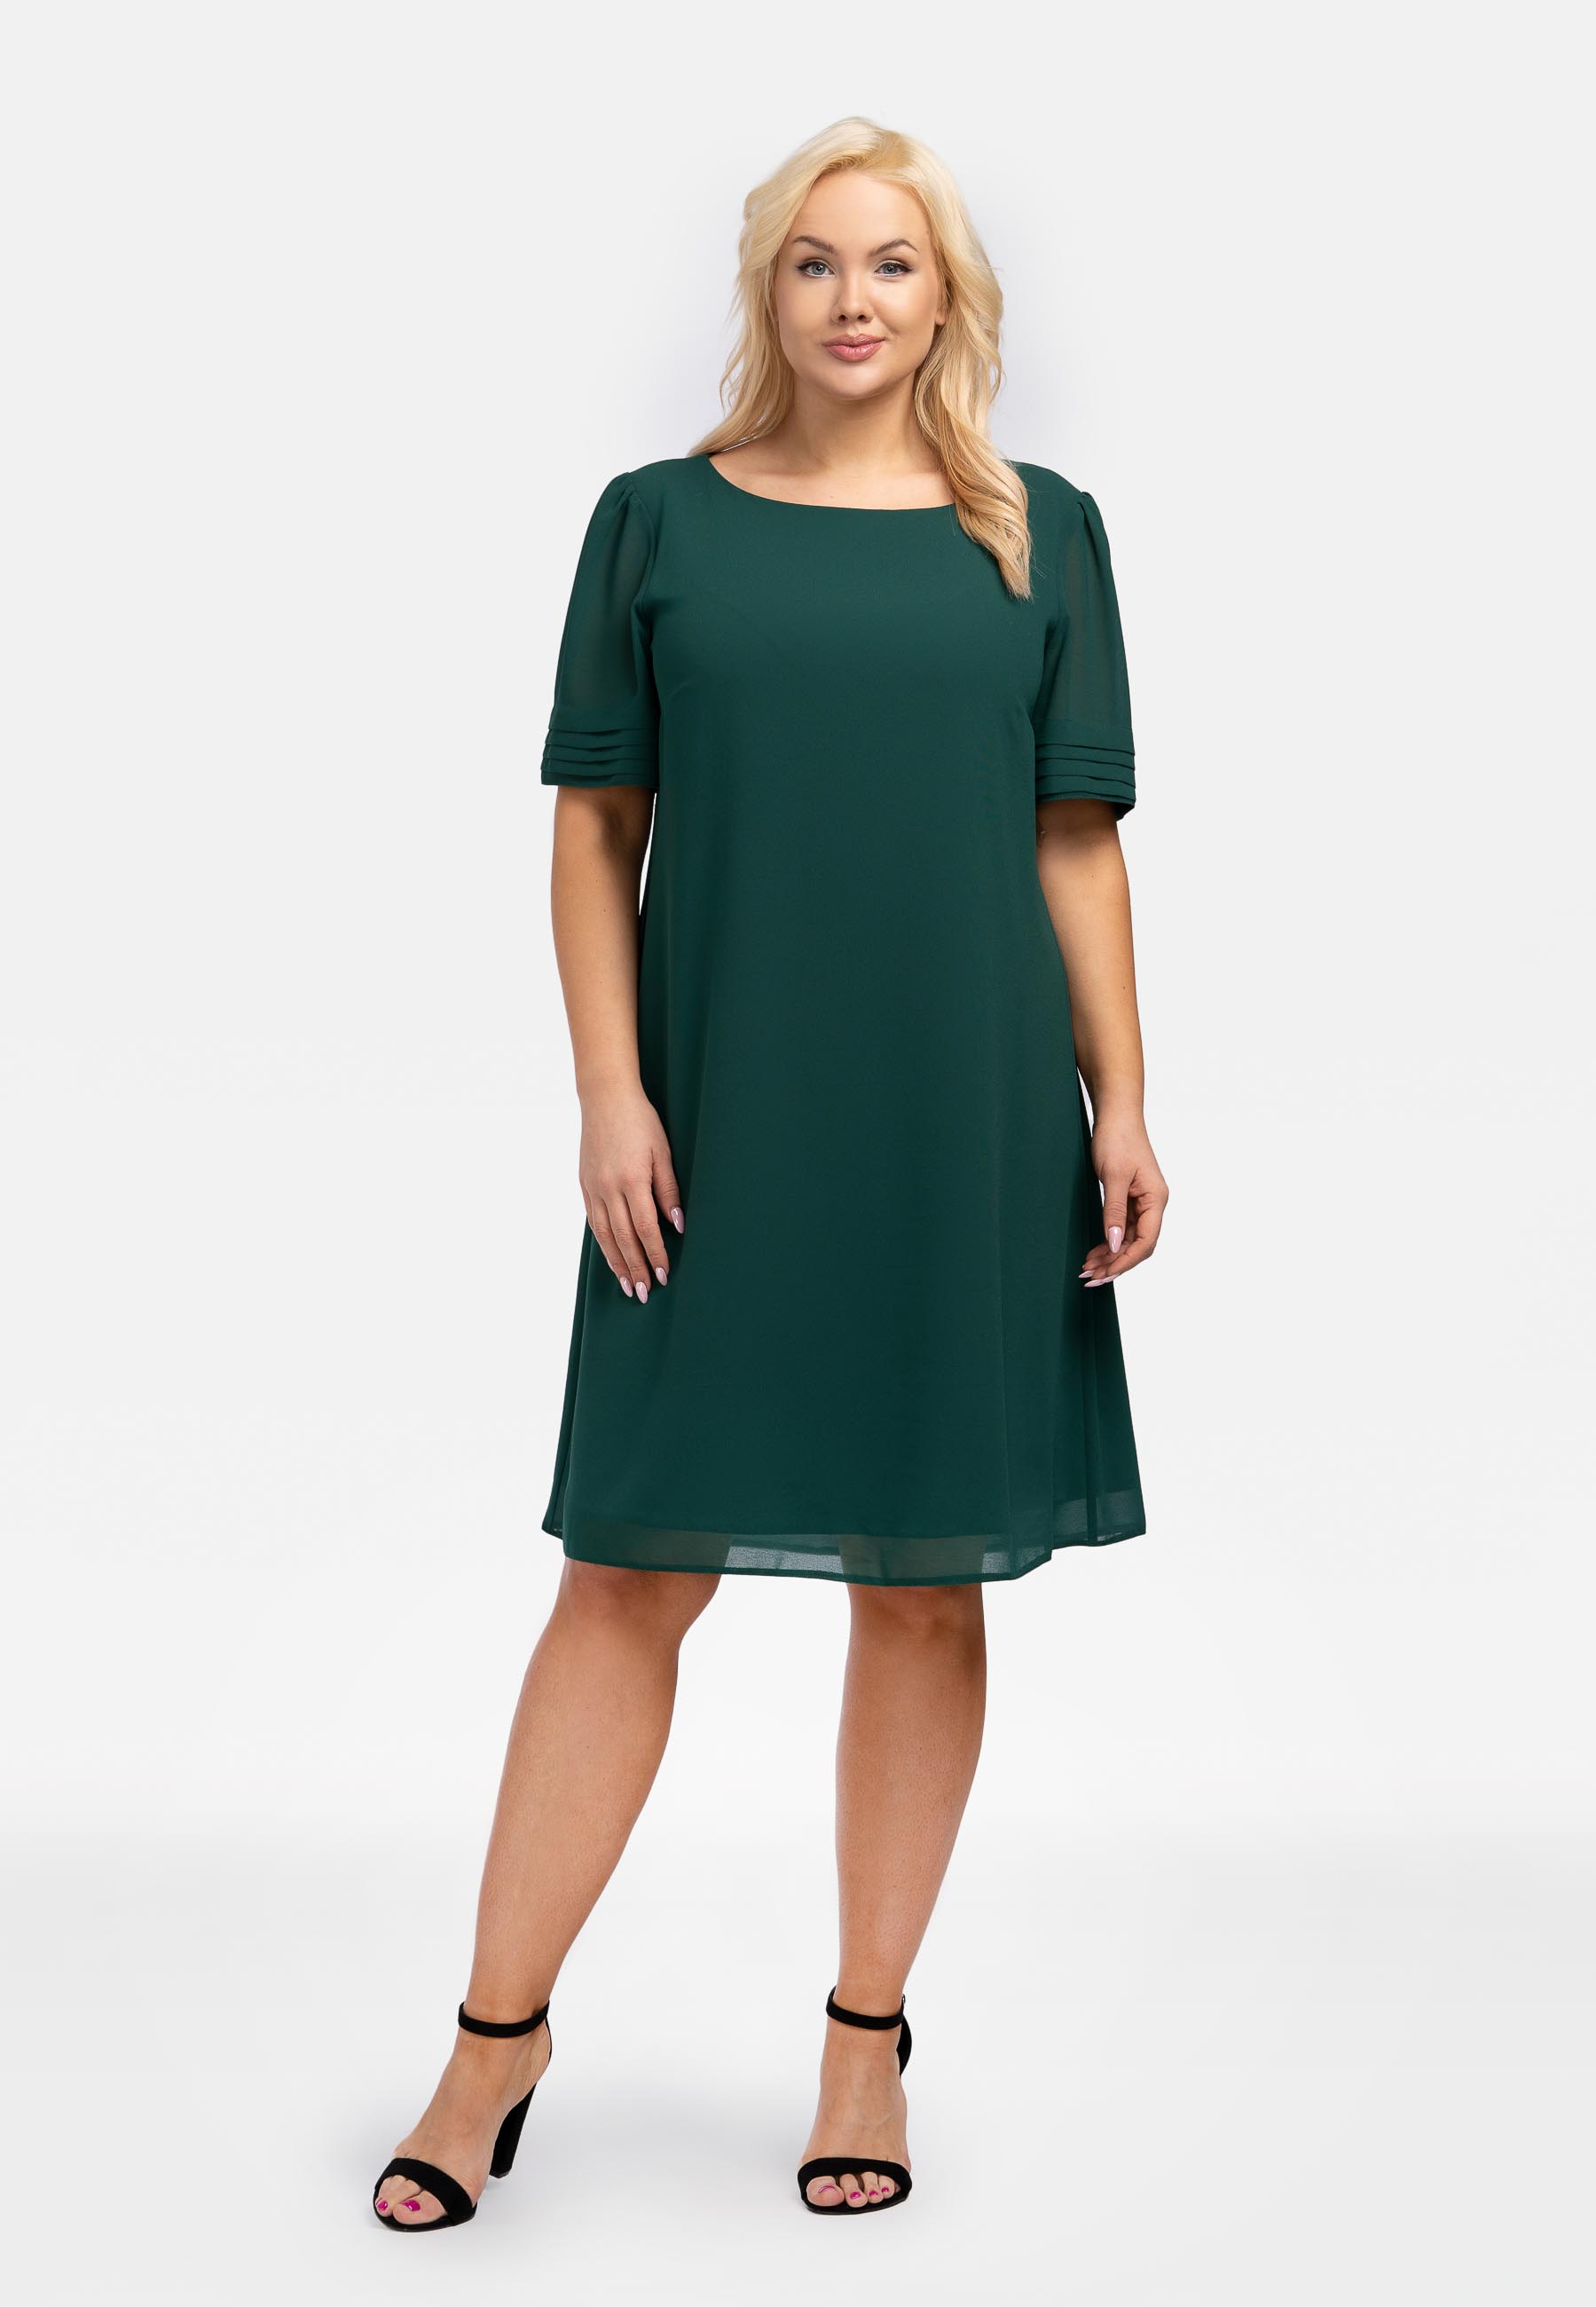 Kleid Chiffon, aus Schlichtes Lagen-Optik, Etuikleid Plus Size